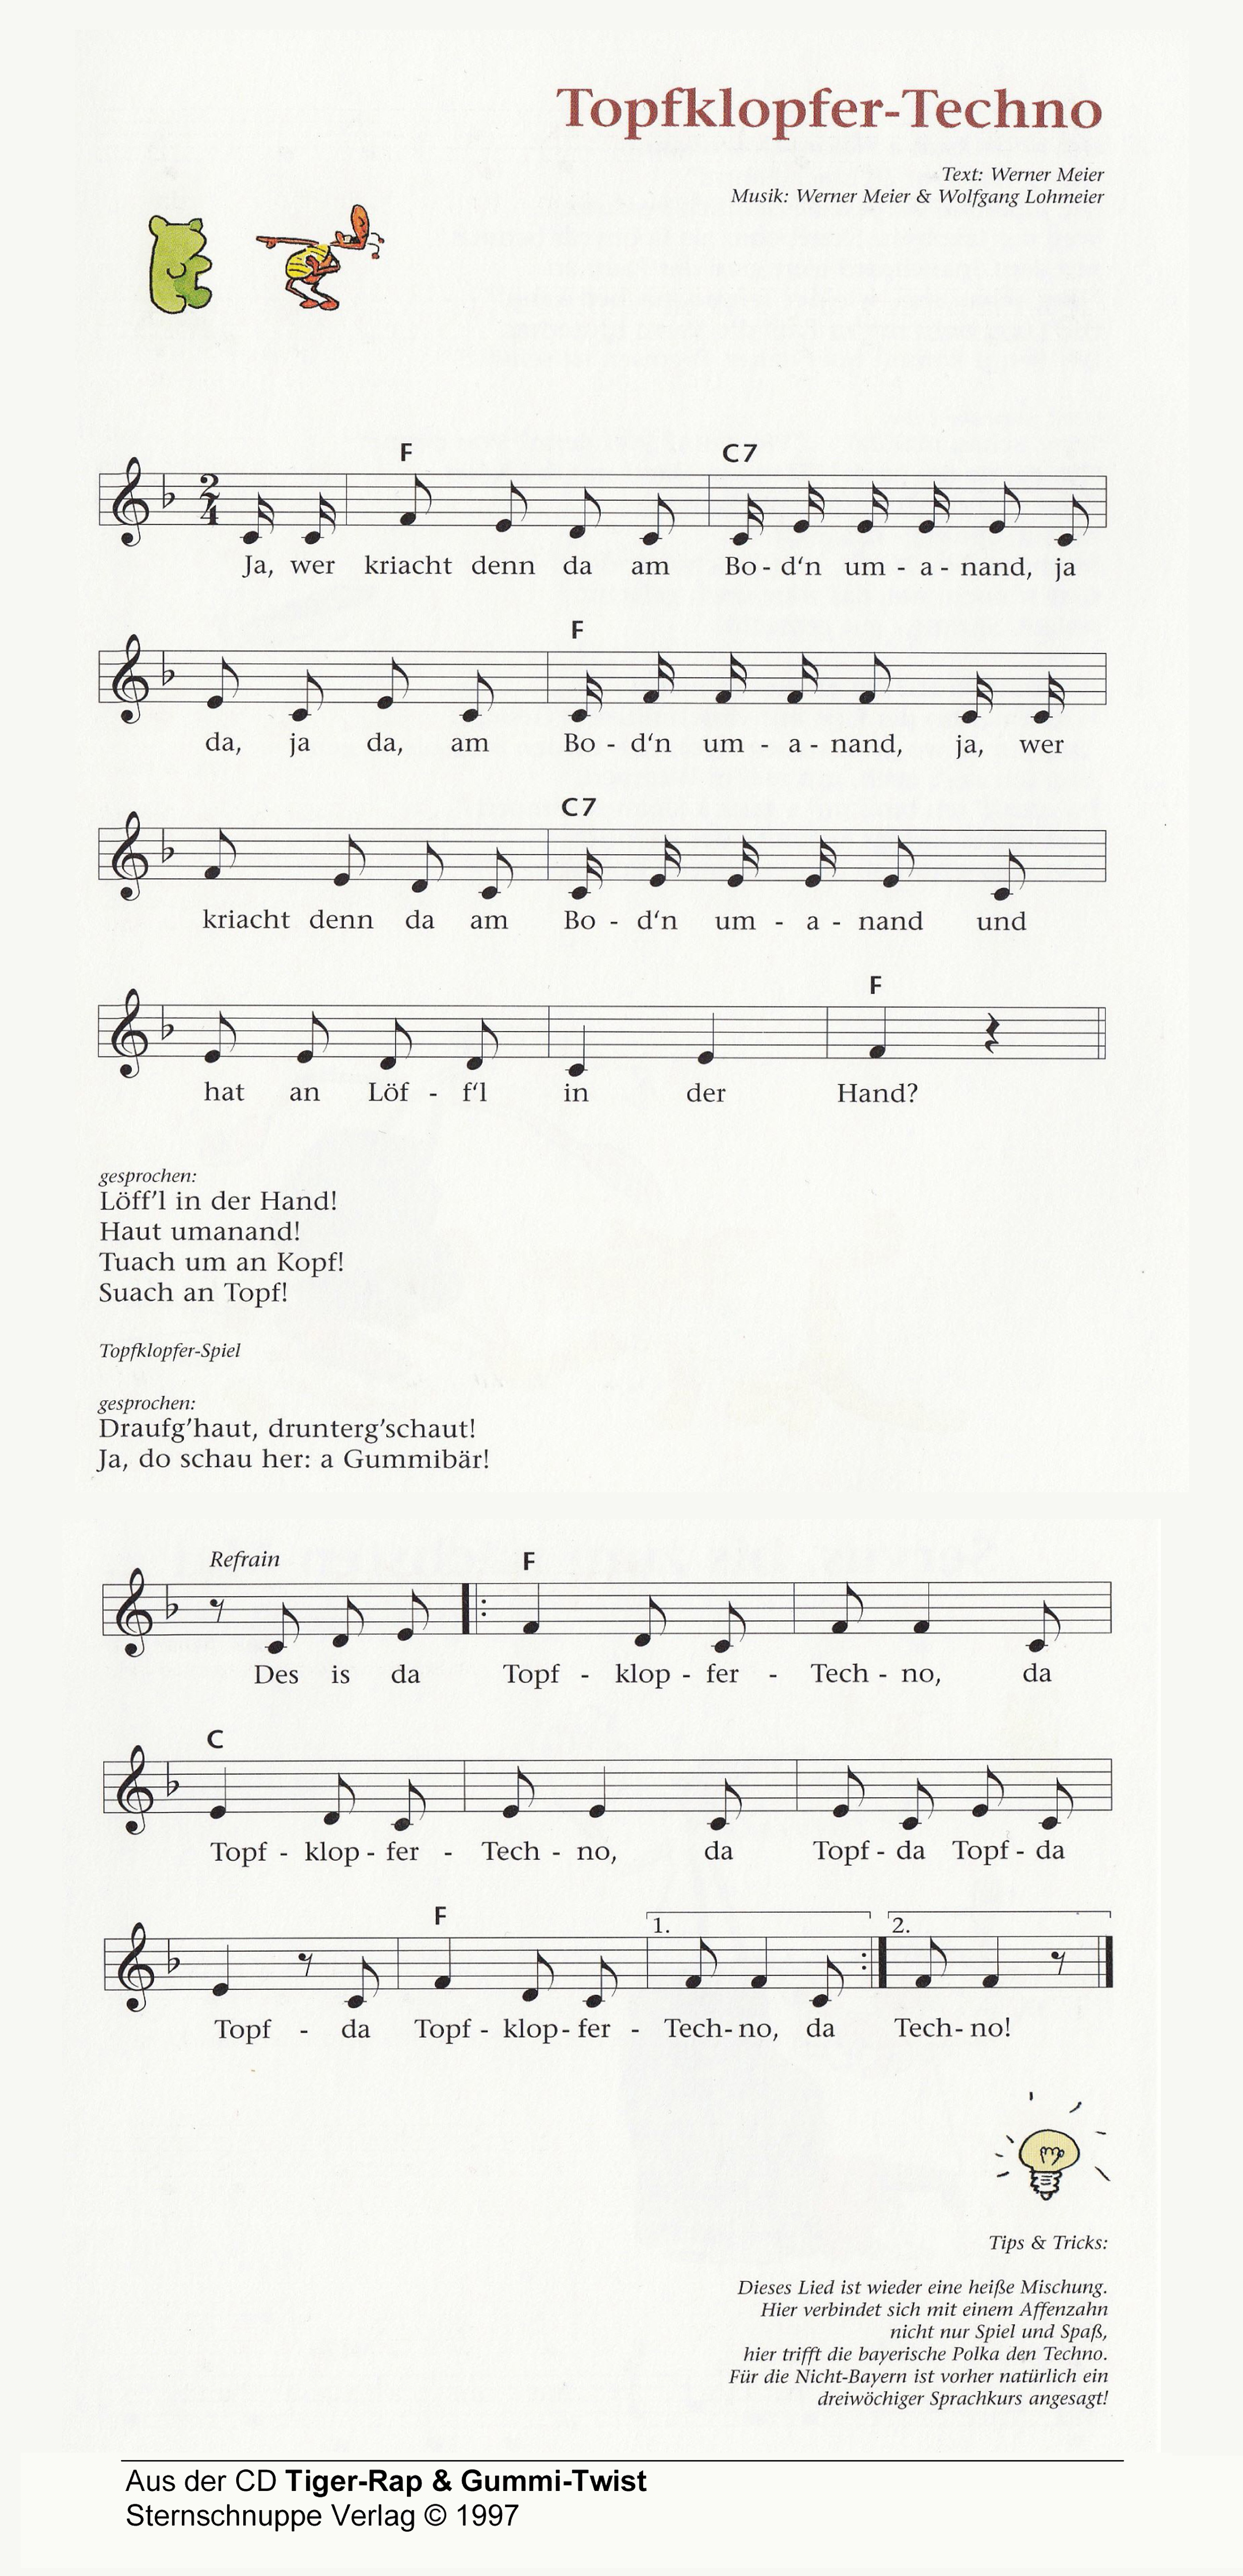 Liedtext, Akkorde und Noten vom Kinderlied Topfklopfer-Techno